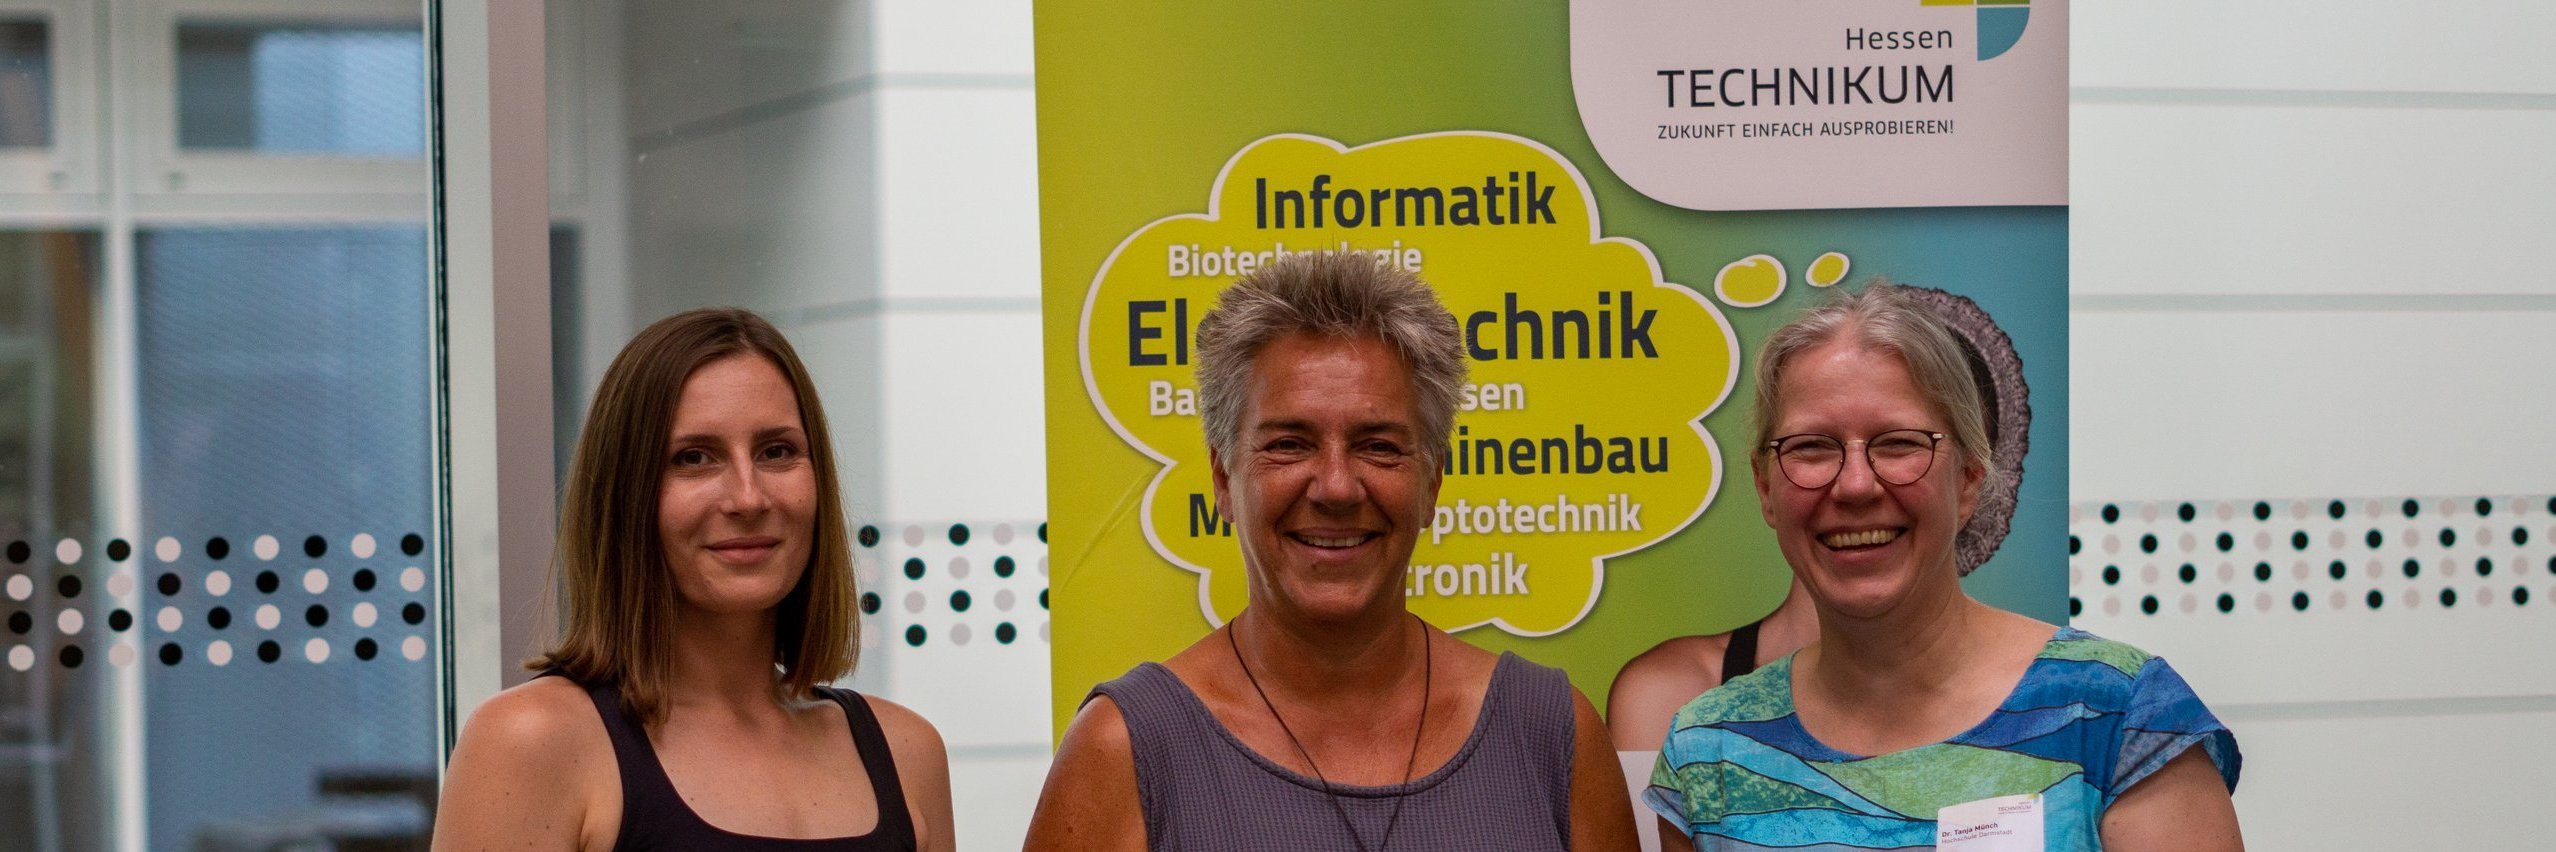 Gruppenbild von Anne Bentrup (Zentral Koordinatorin), Prof. Dr. Yvonne Haffner (Projektleitung) und Frau Mönch ()